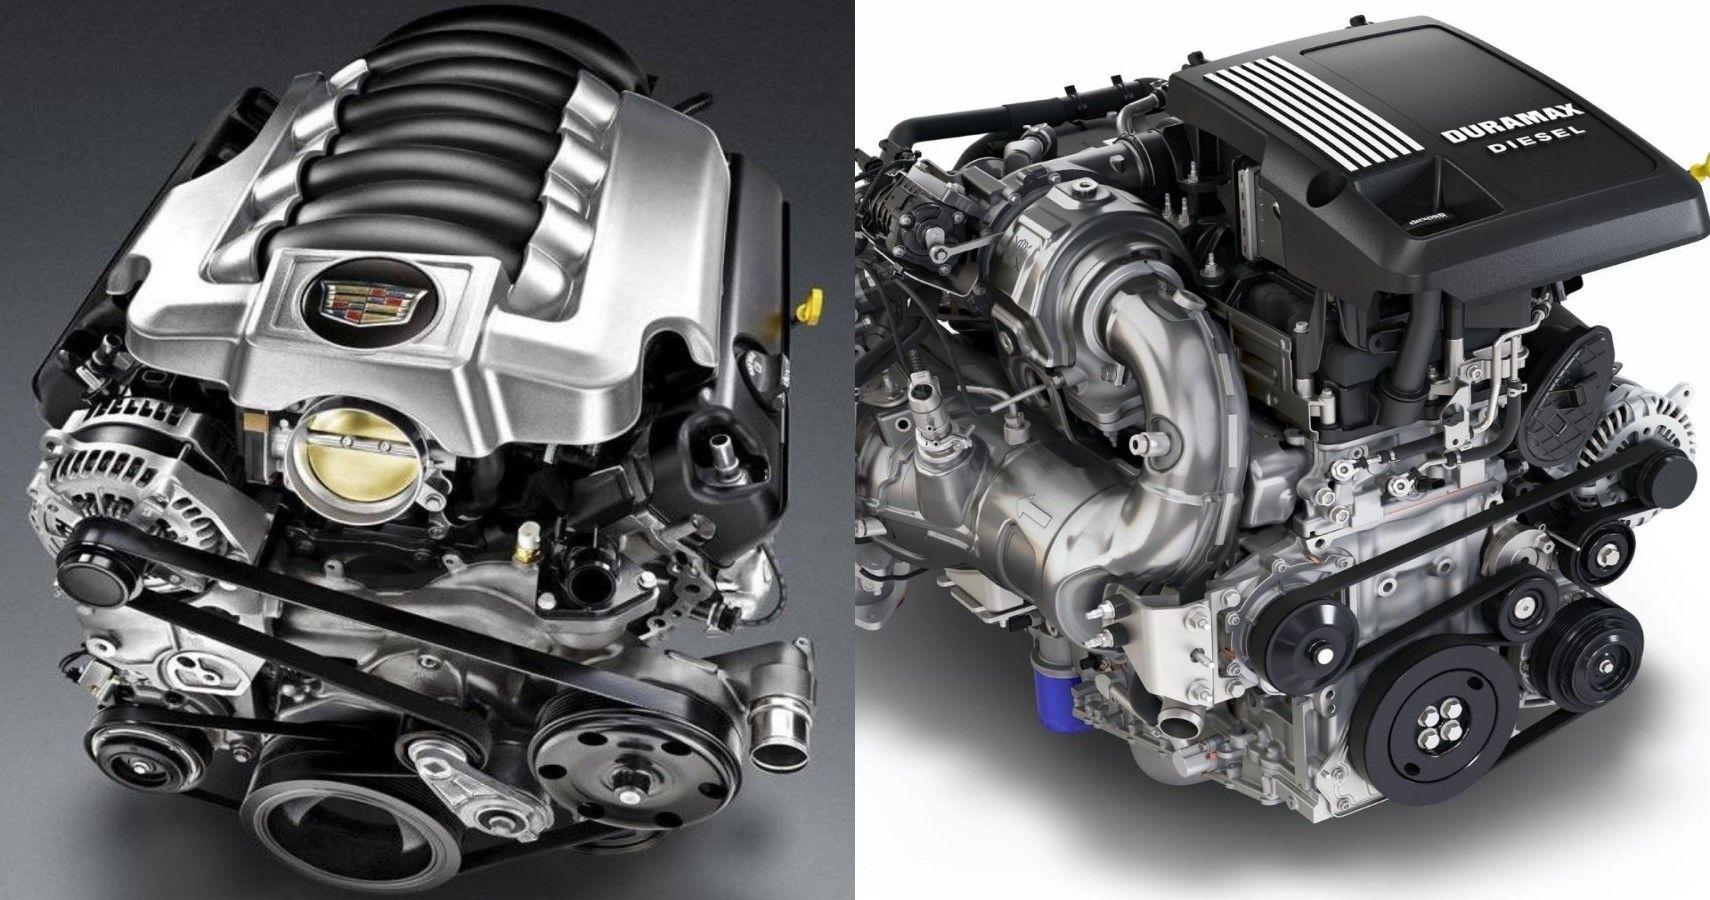 2021 Cadillac Escalade engine options